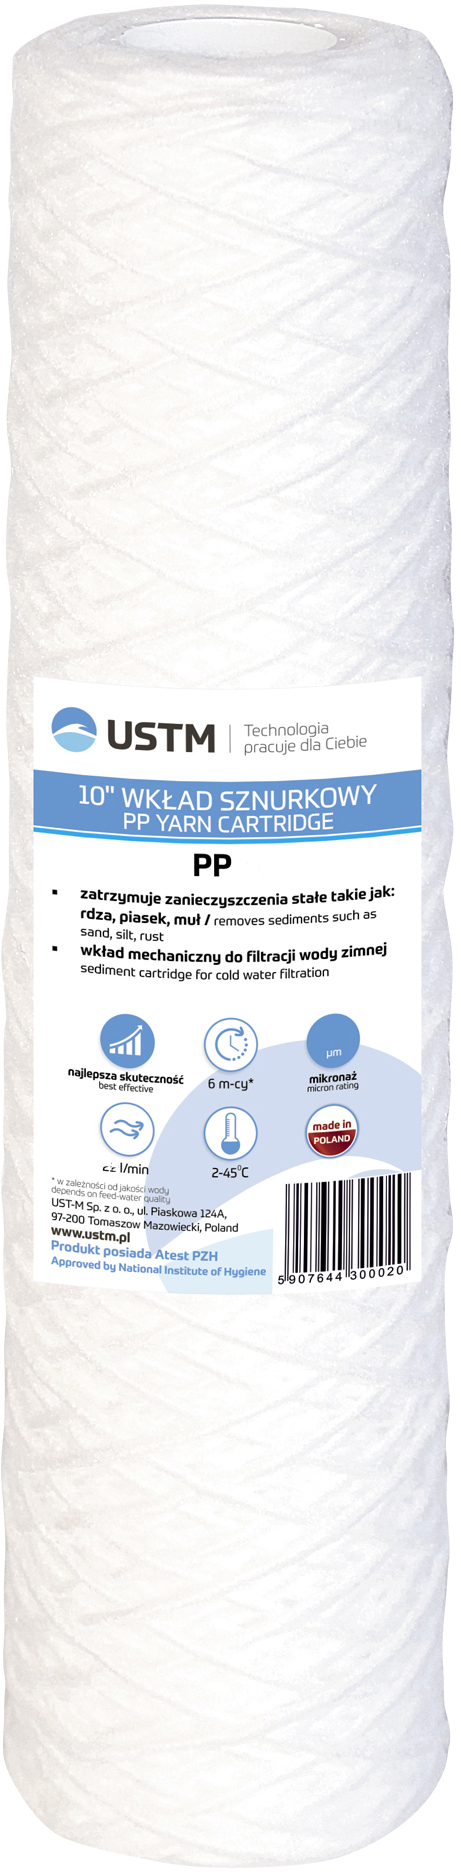 Картридж для фильтра USTM PP20 в интернет-магазине, главное фото